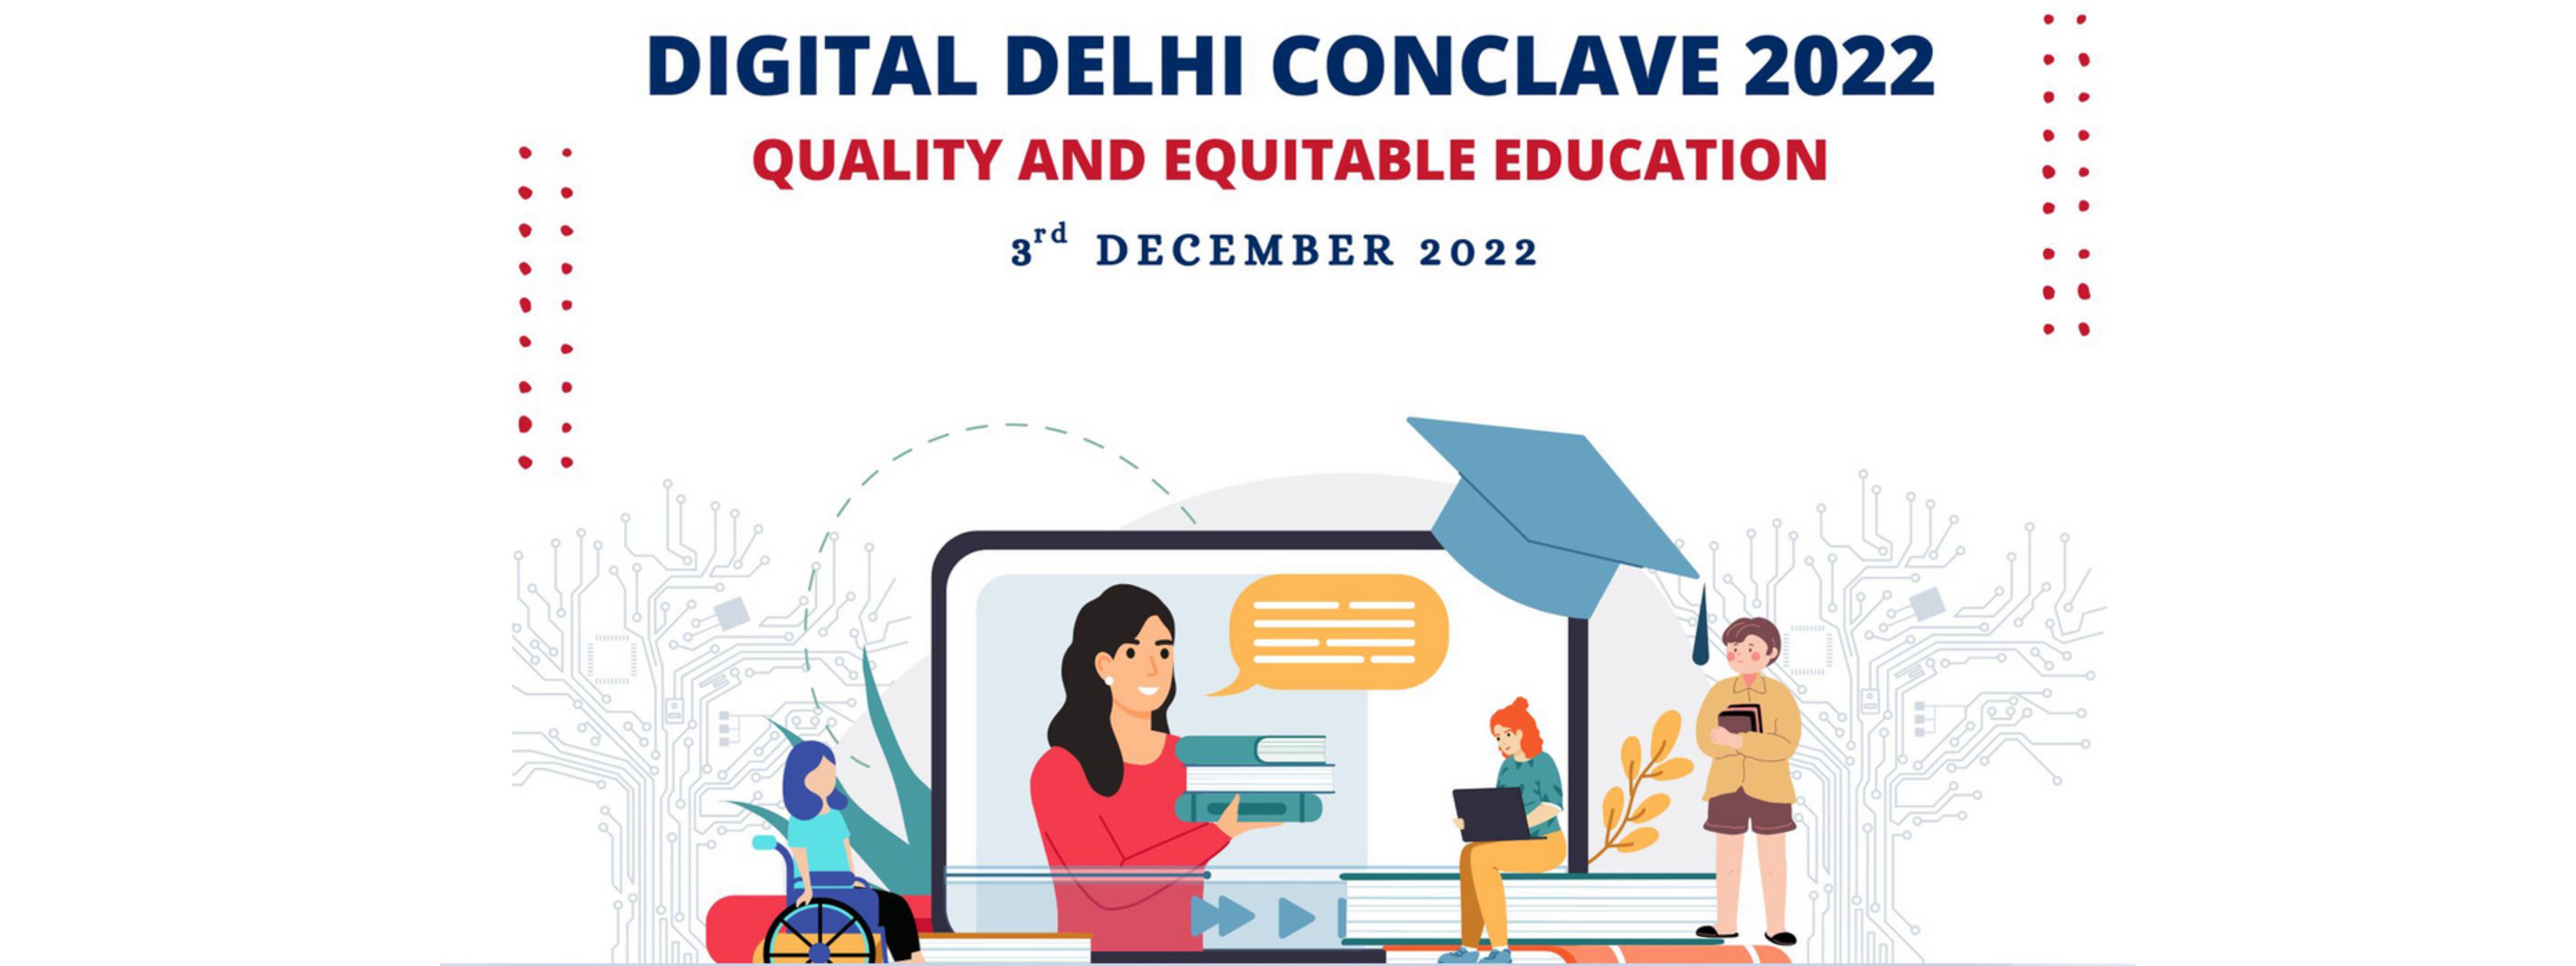 Digital Delhi Conclave, 2022